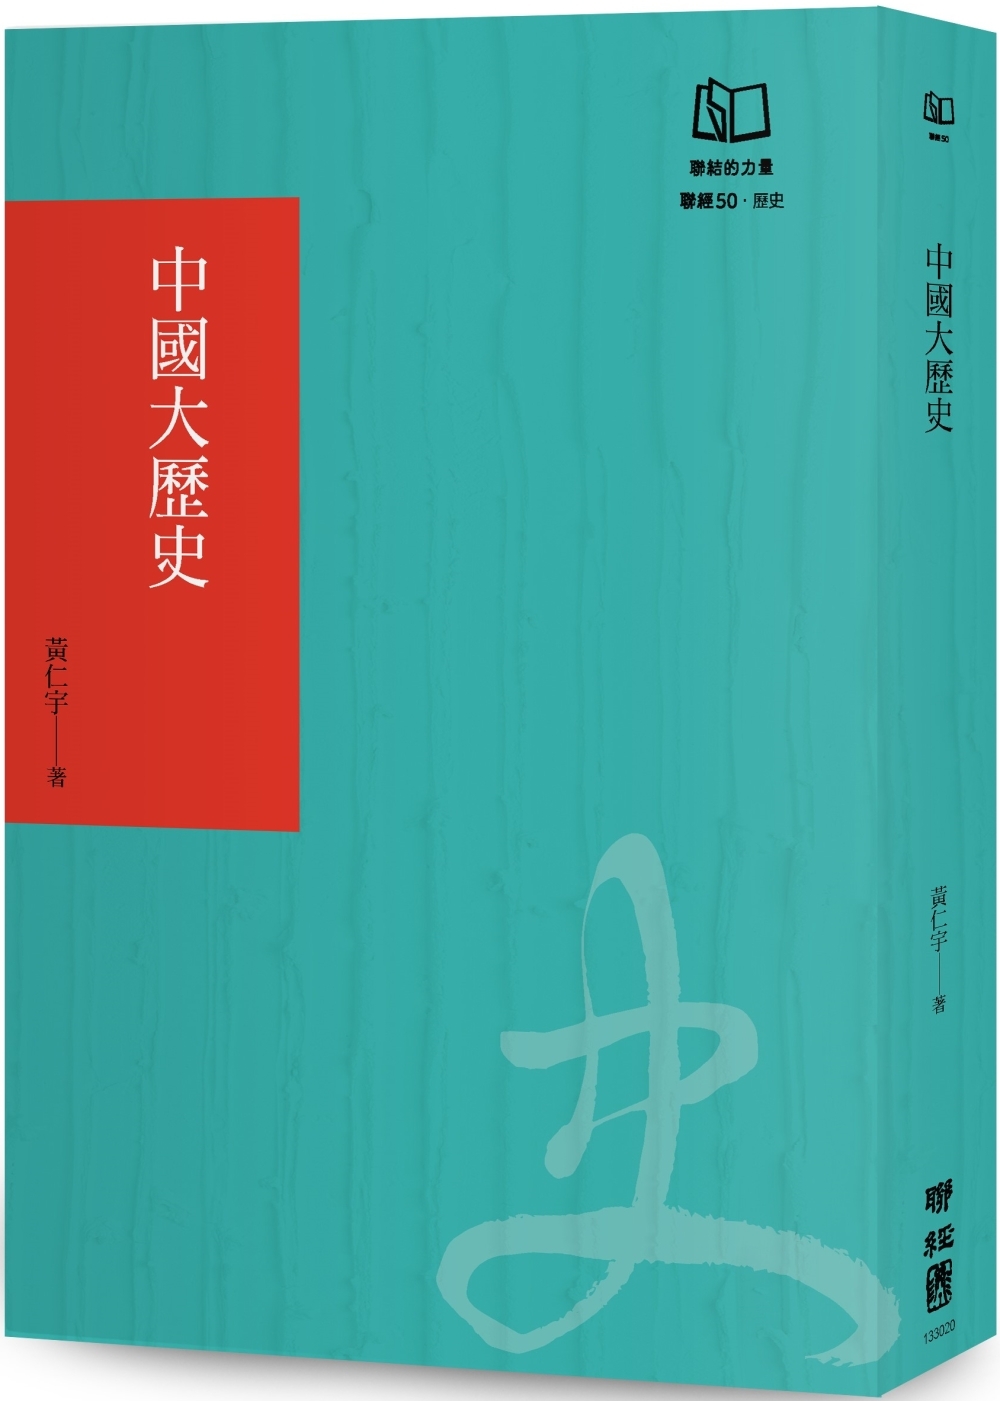 中國大歷史(聯經50週年經典書衣限定版)